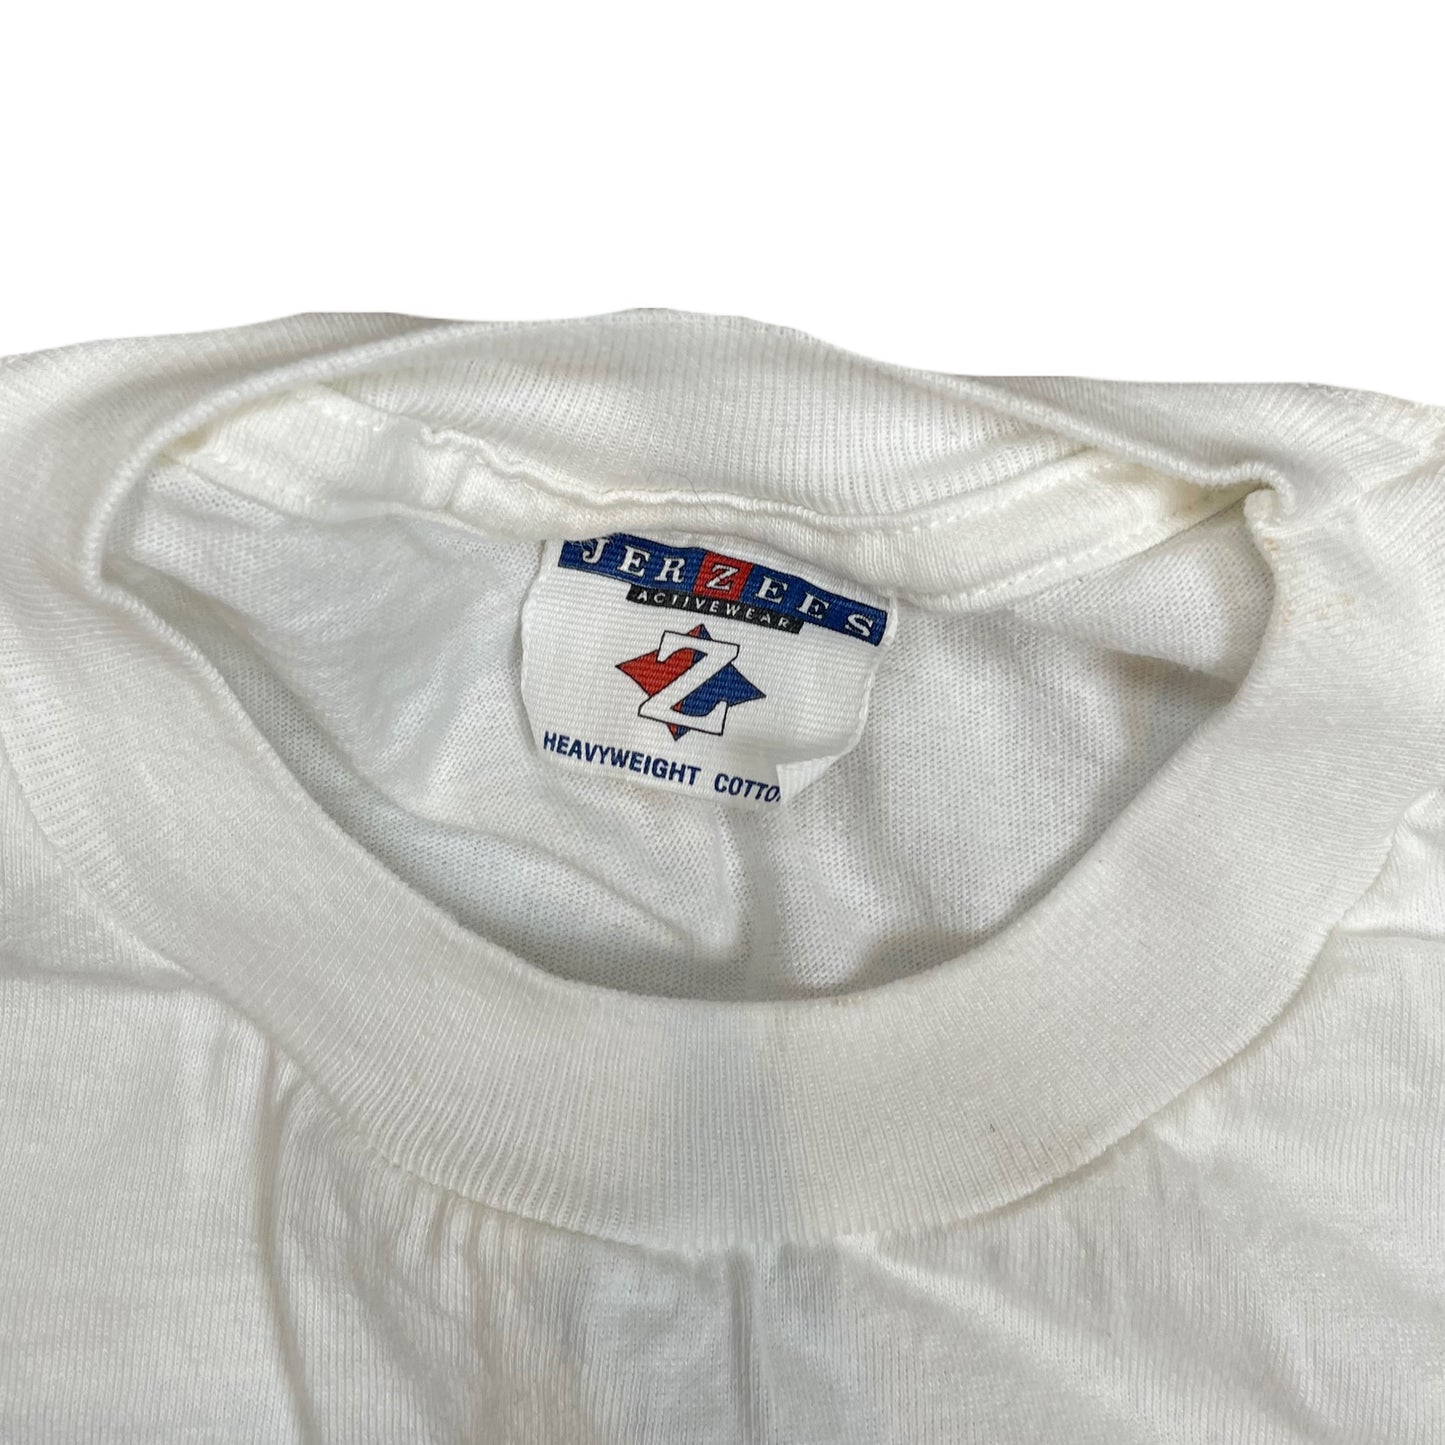 Vintage 2002 NHRA Member National Dragster Shirt - L